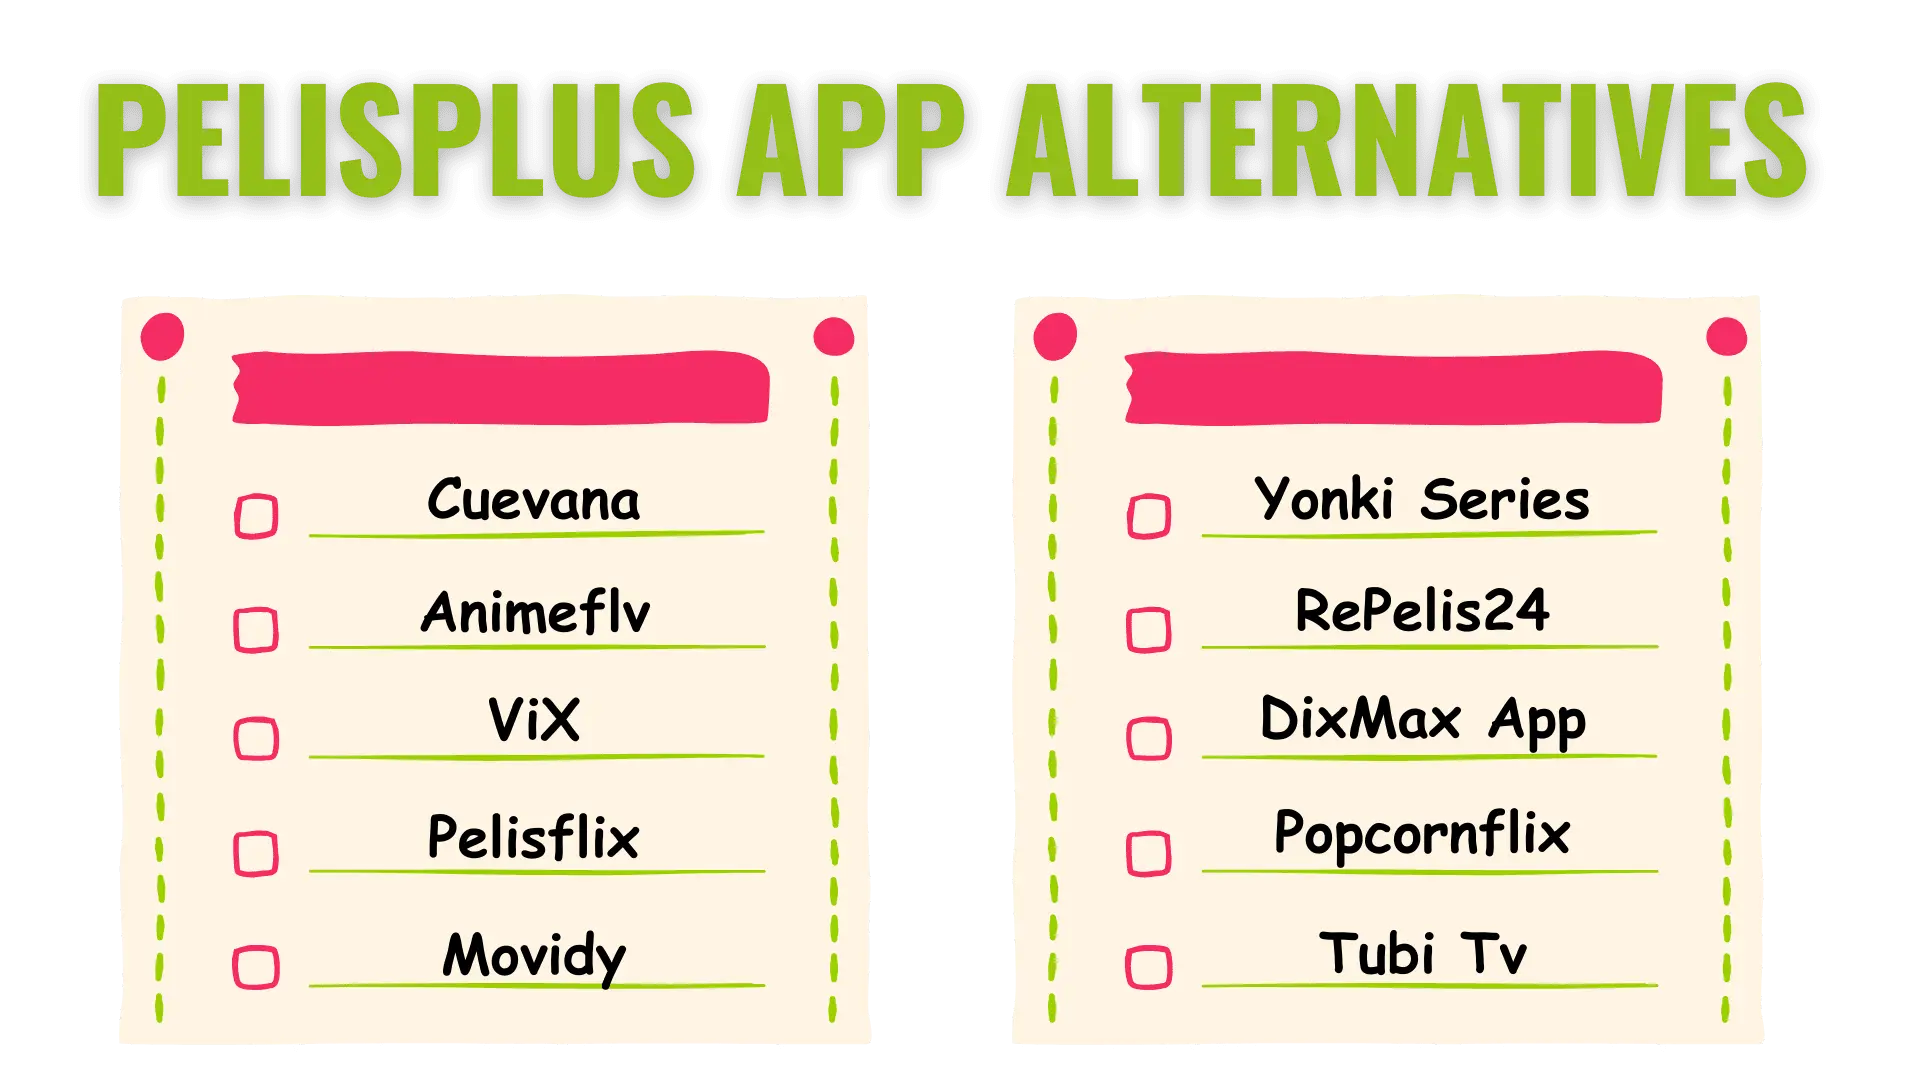 Pelisplus App Alternatives